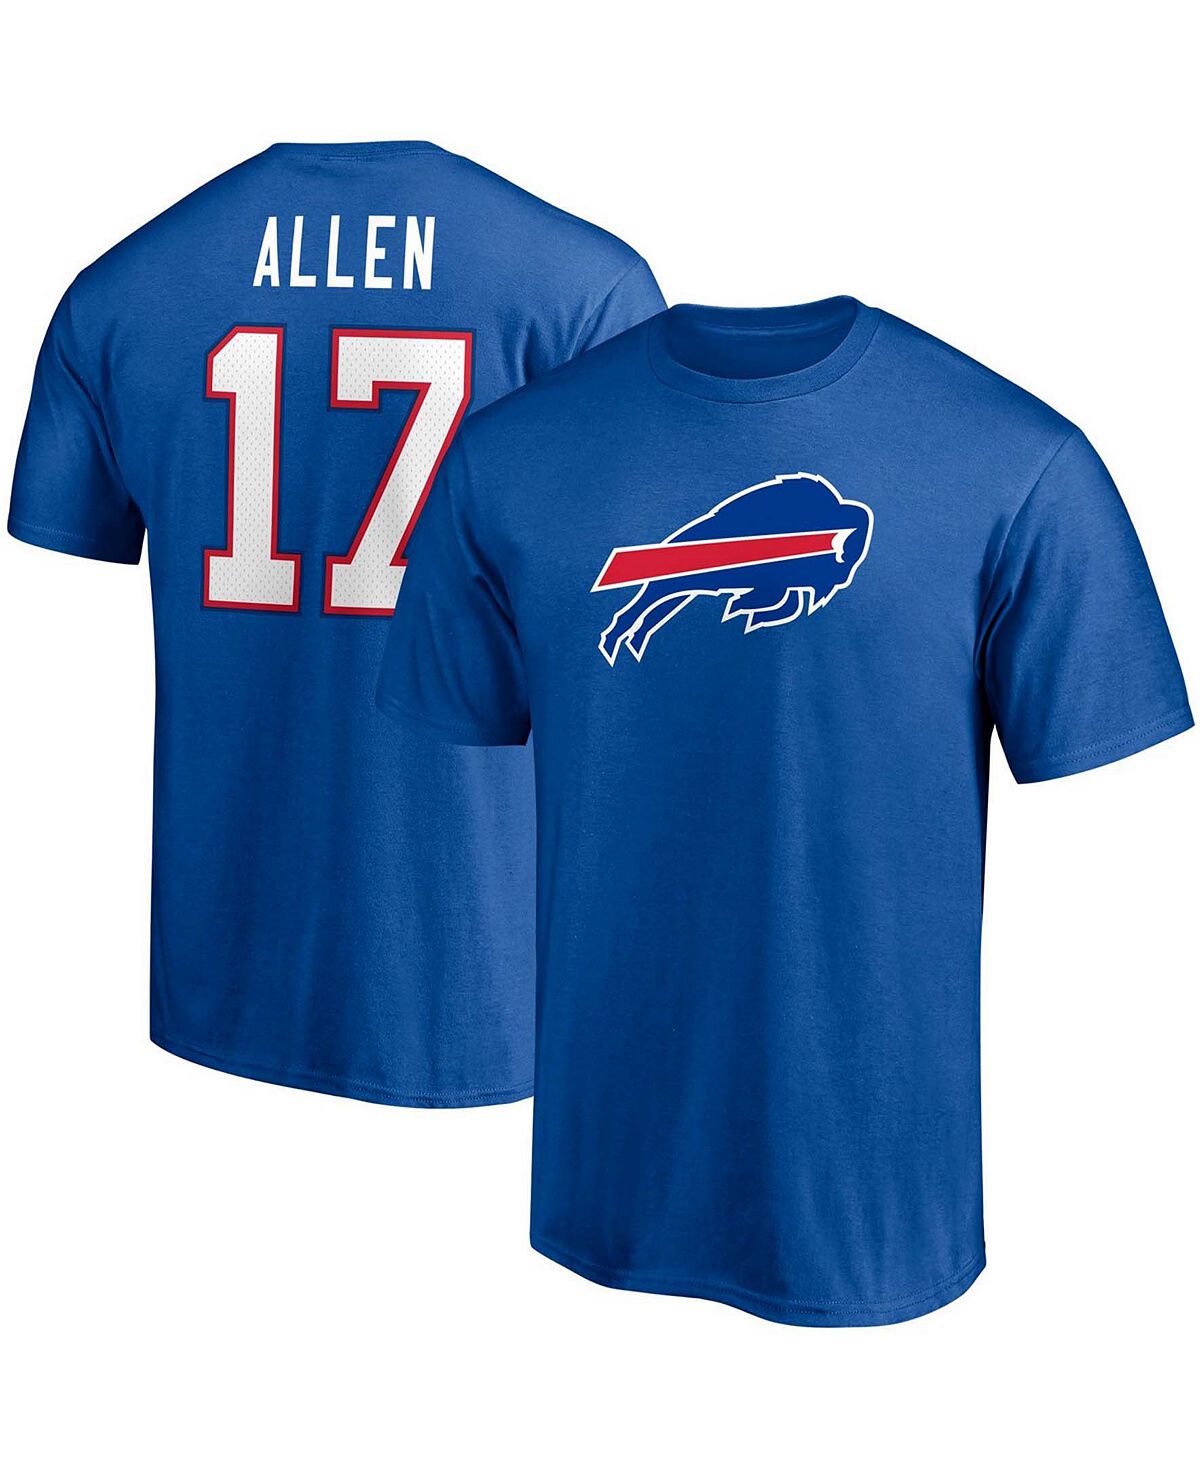 Мужская футболка с именем и номером игрока Josh Allen Royal Buffalo Bills Fanatics